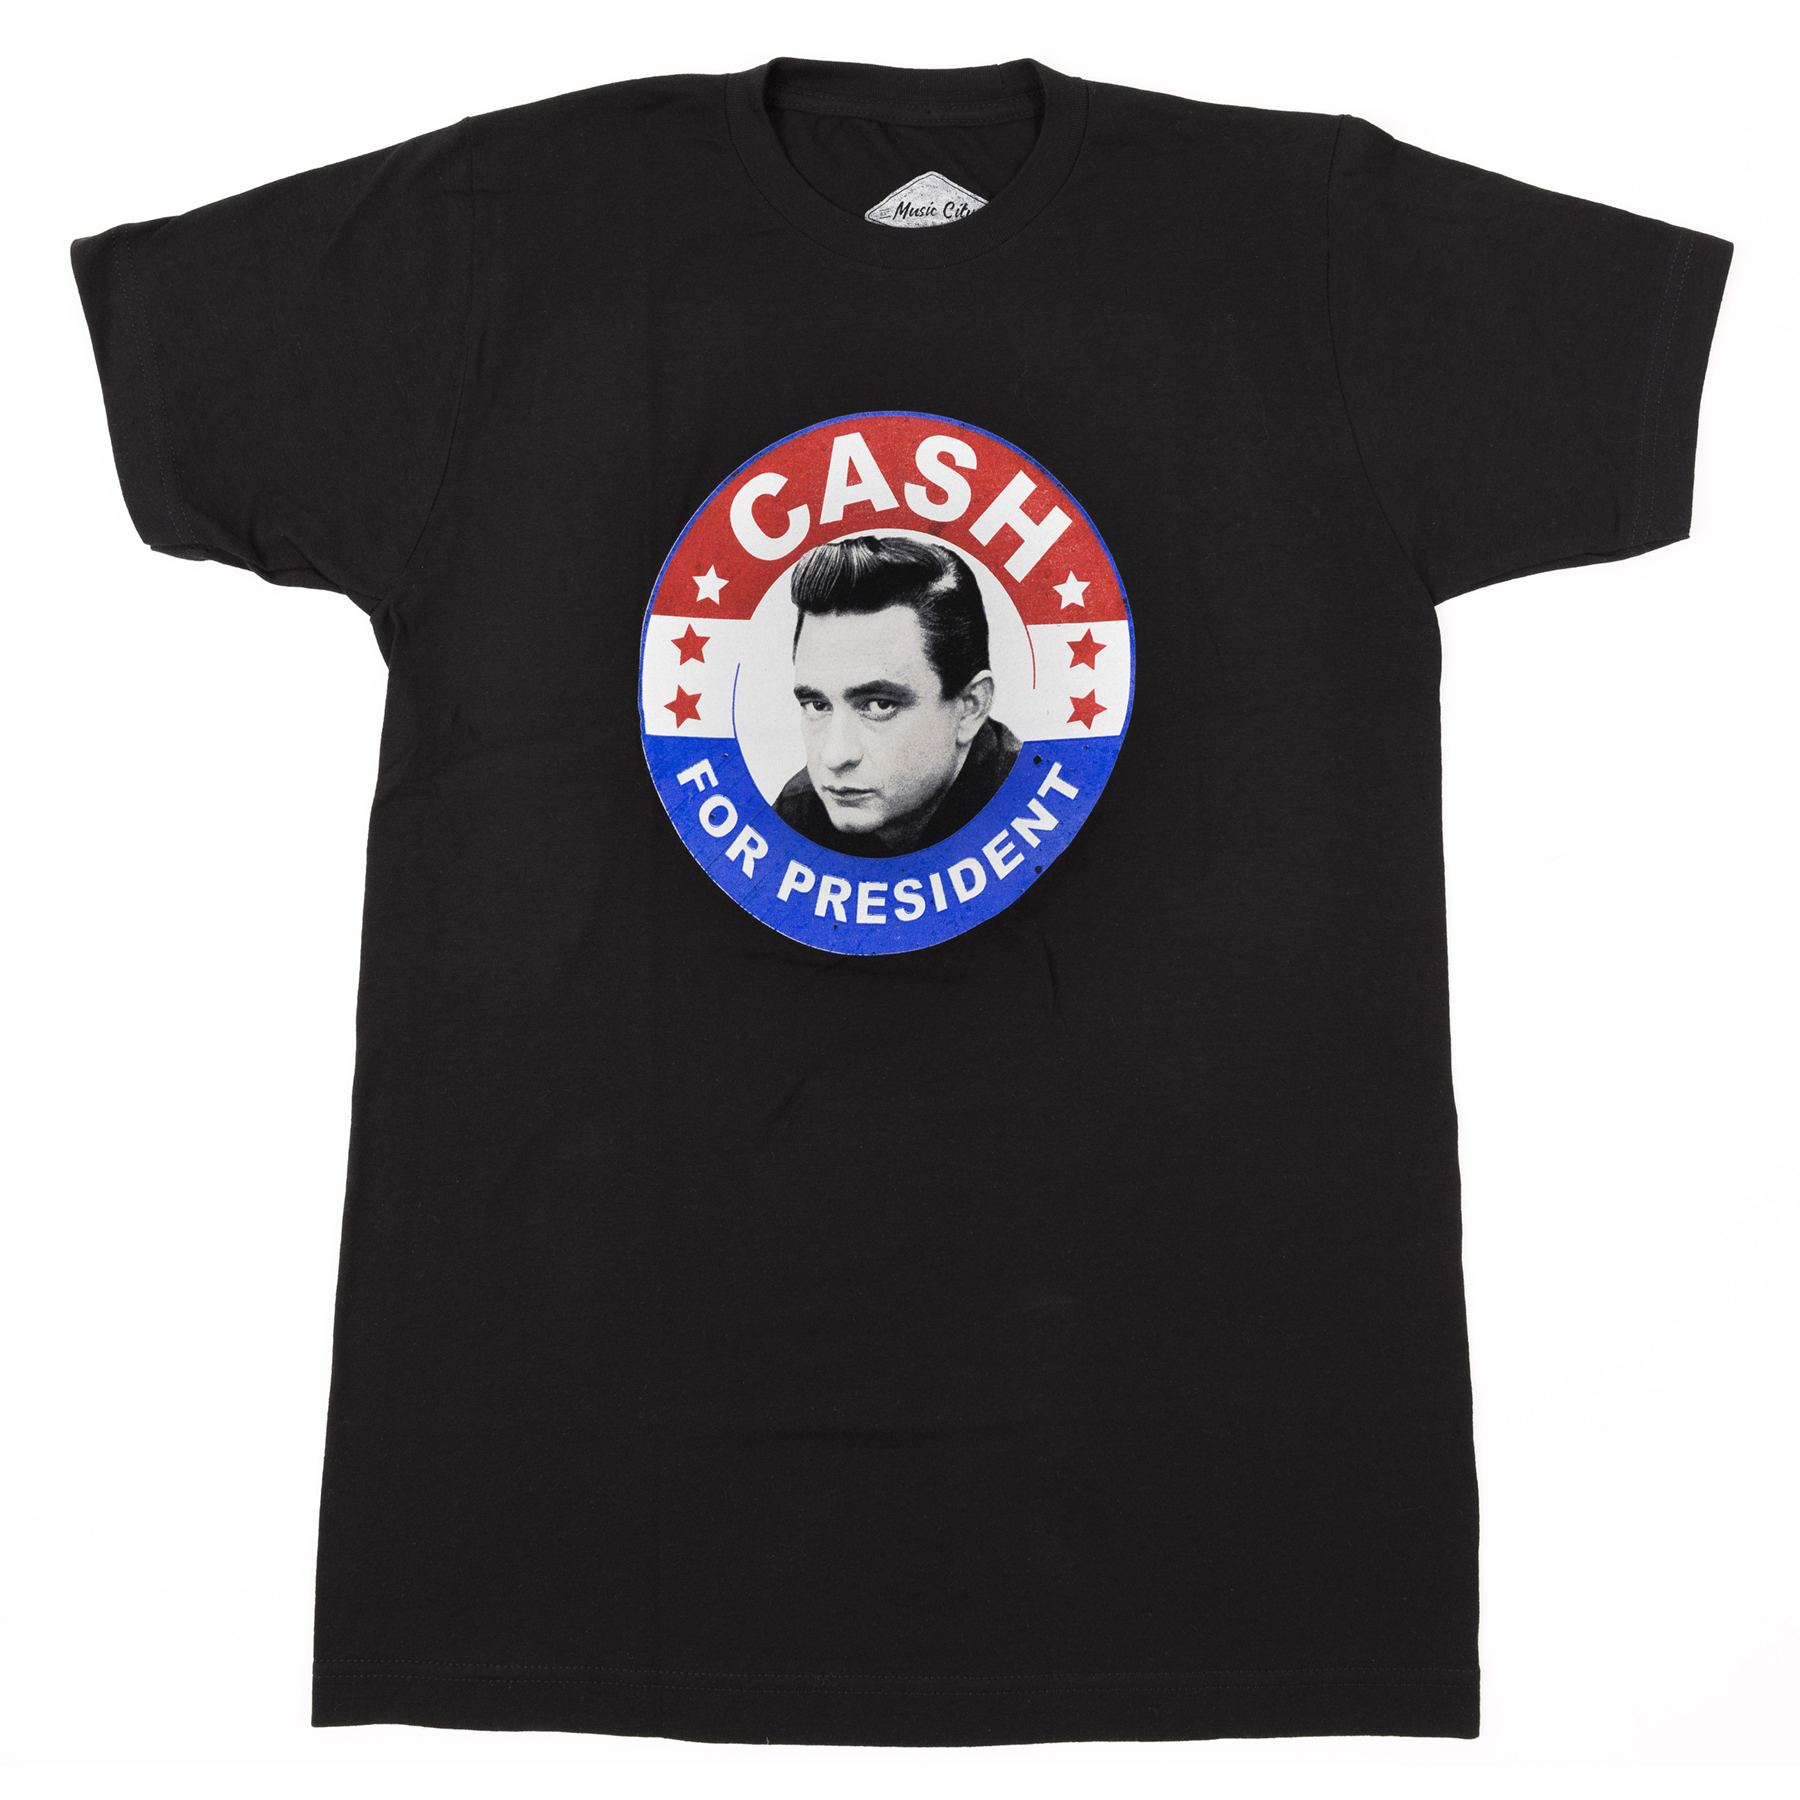 Johnny Cash for President Black Tee